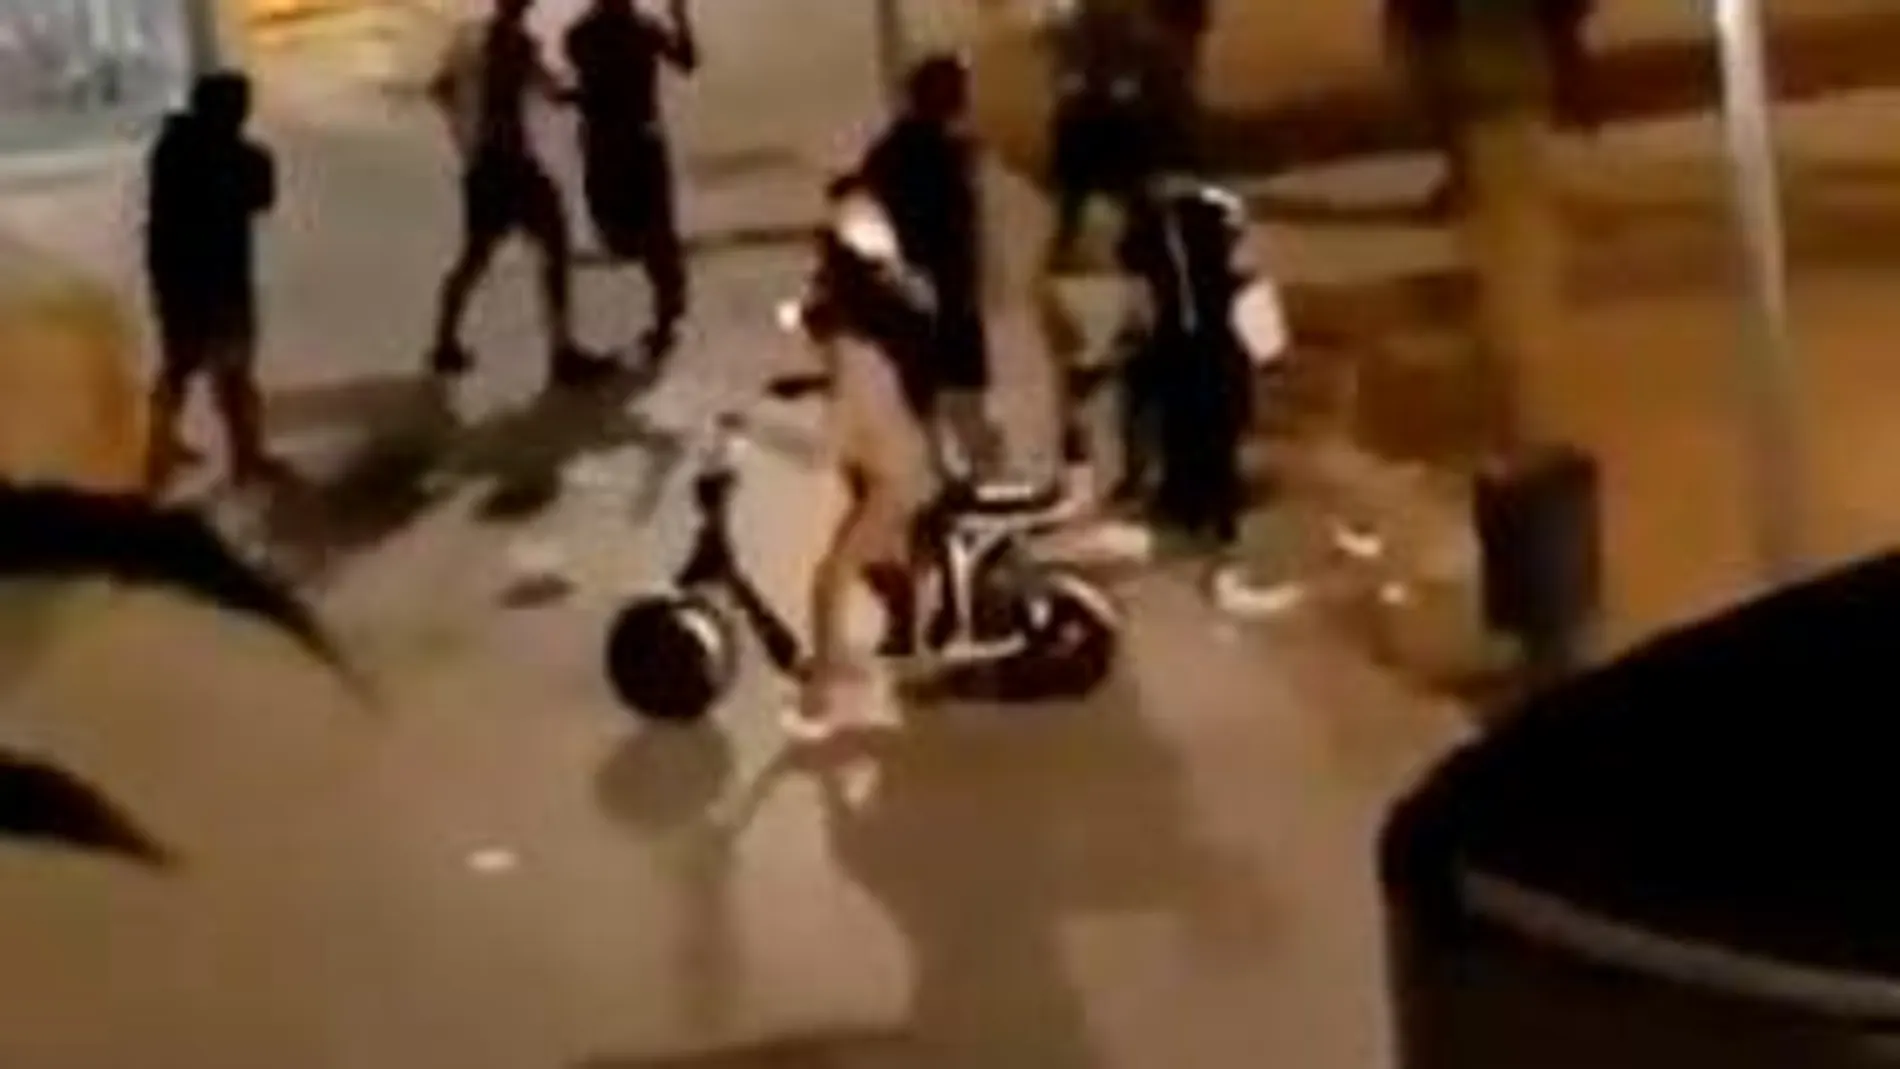 Captura del vídeo donde se ve la pelea entre jóvenes